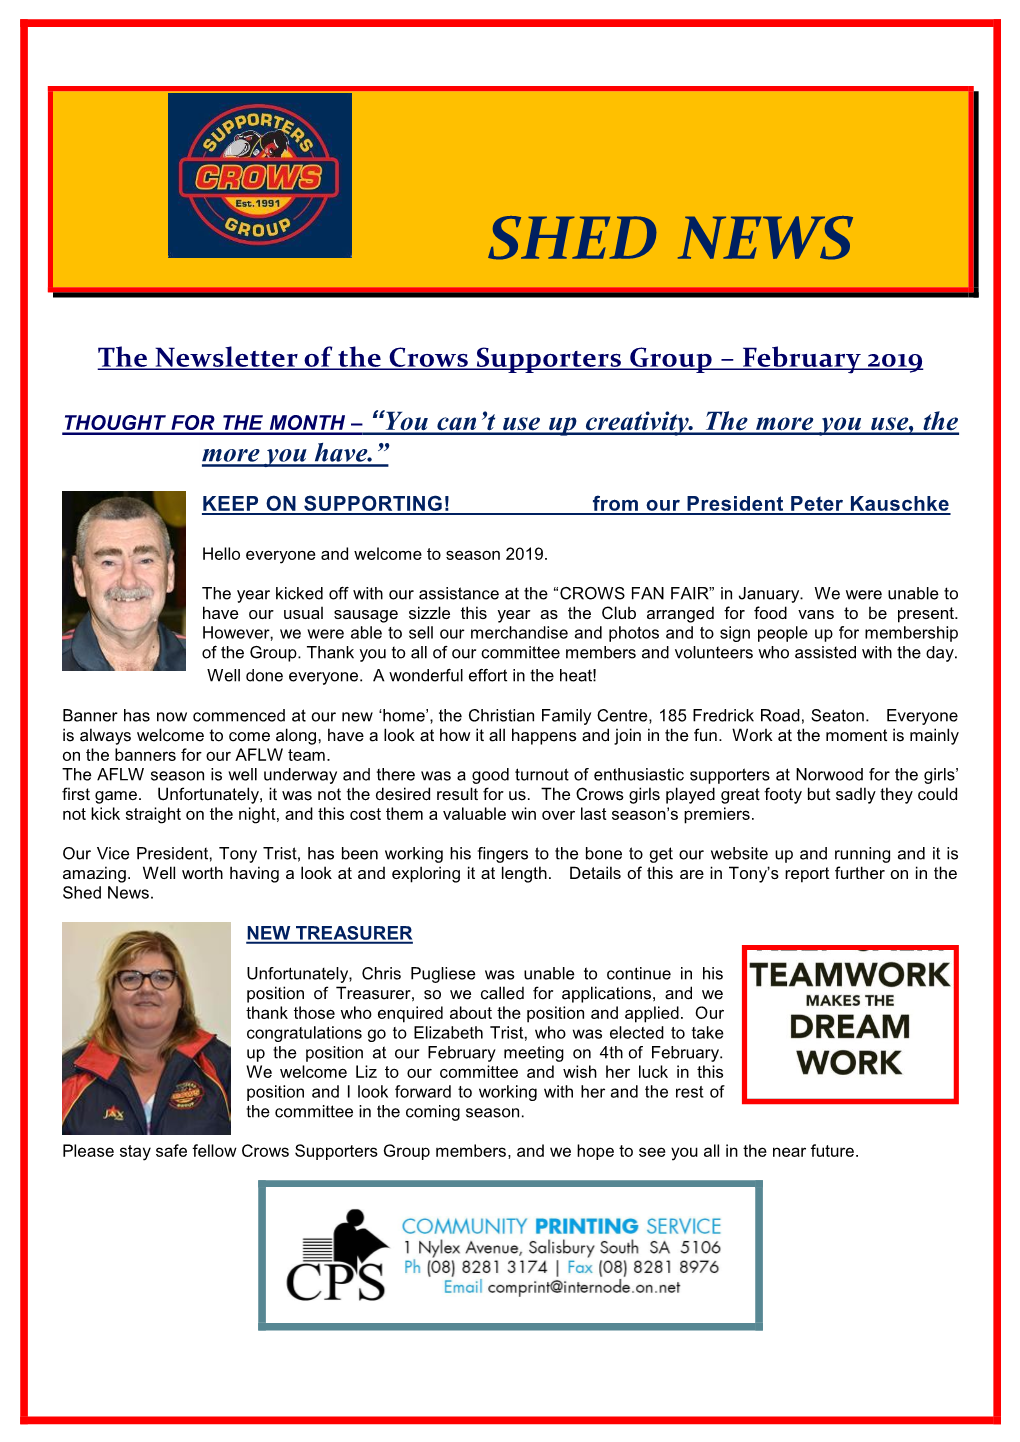 February Shed News